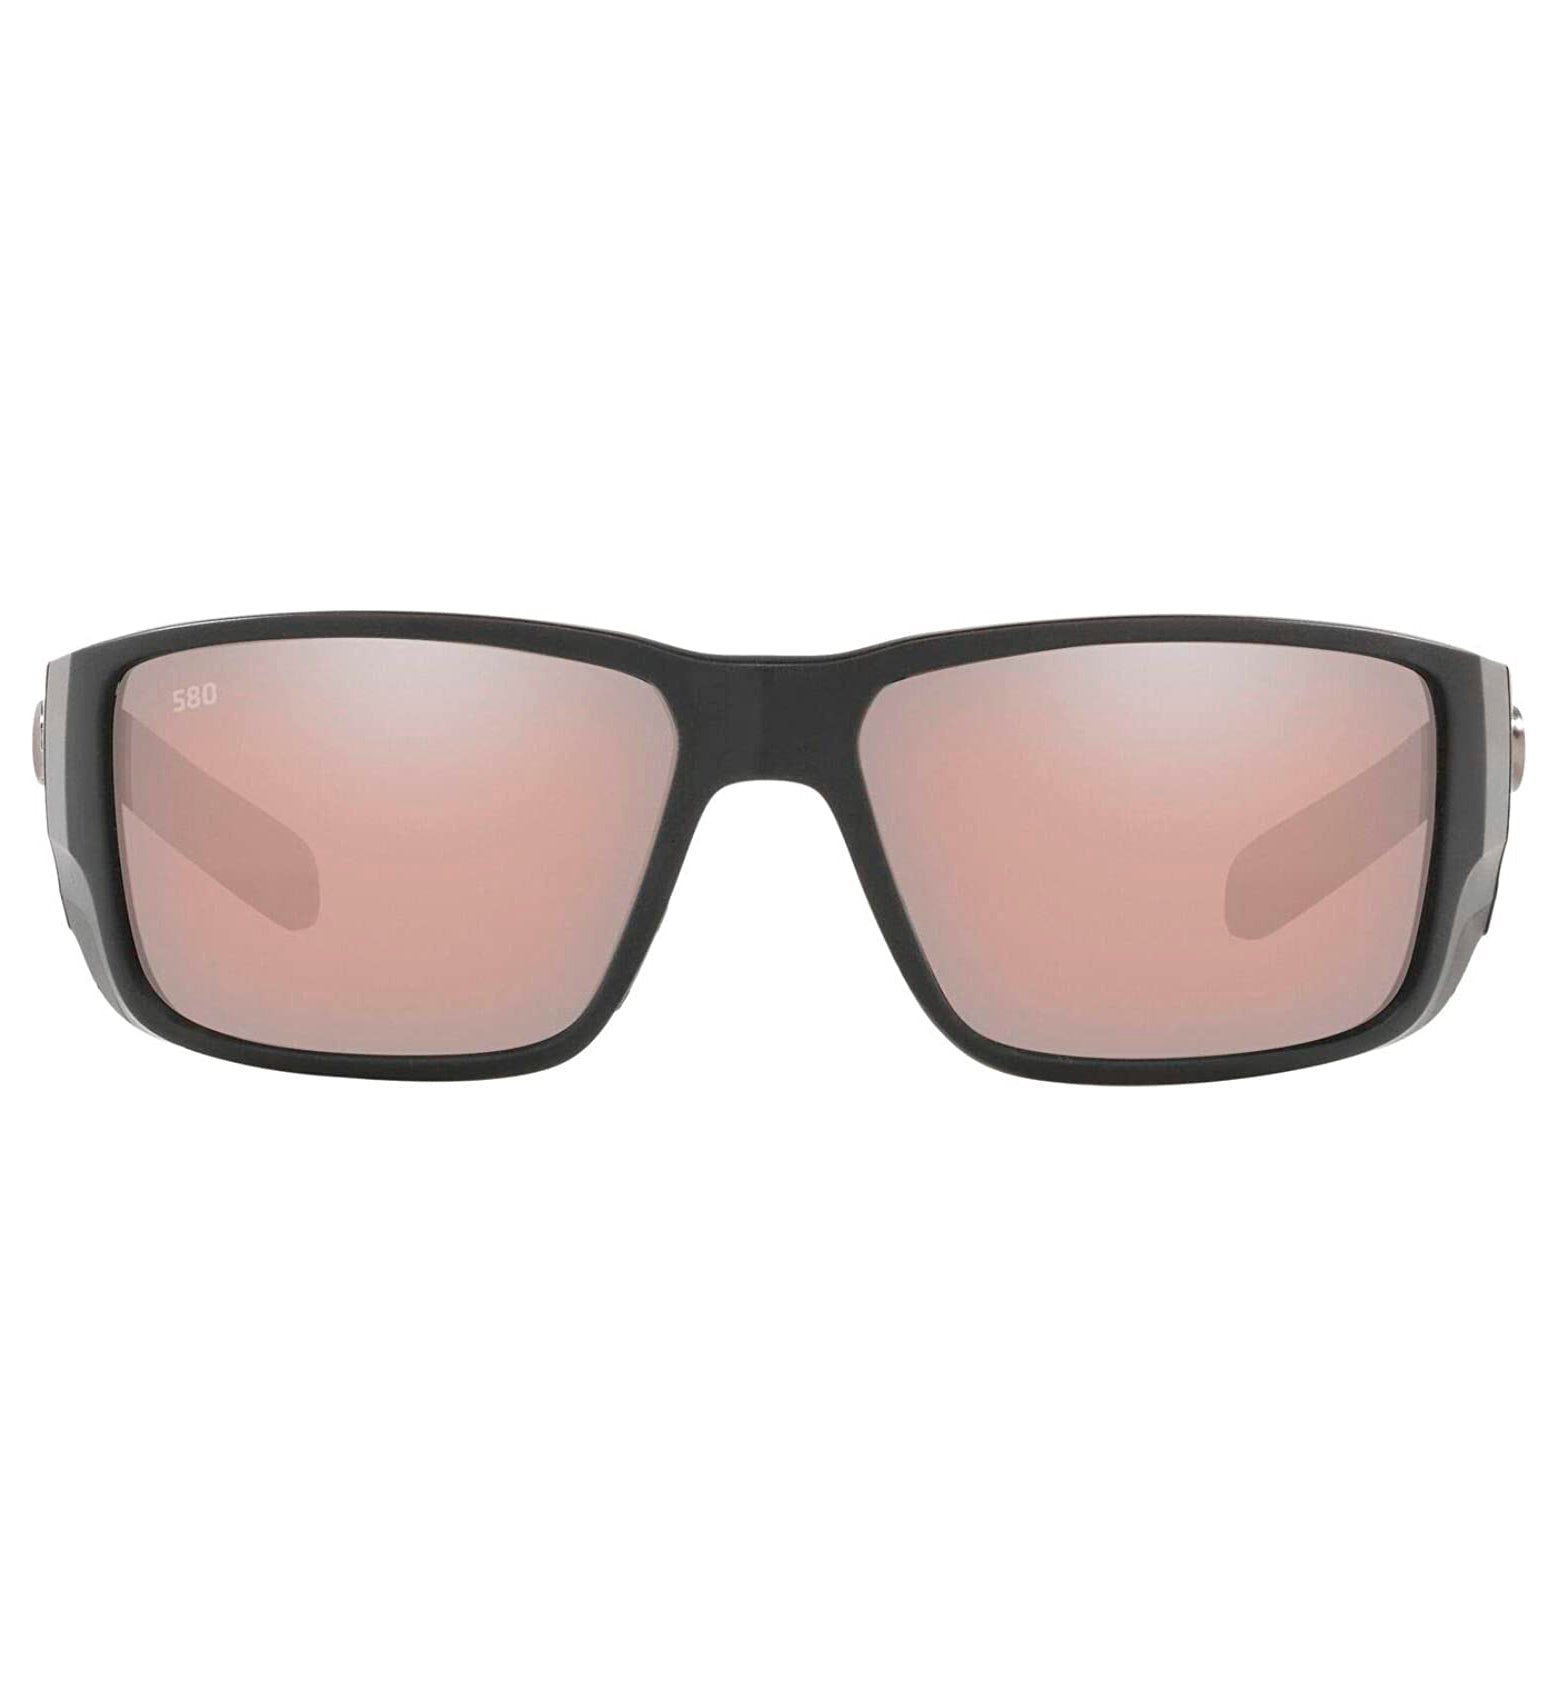 Costa Del Mar Blackfin Pro Sunglasses MatteBlack CopperSilverMirror 580G